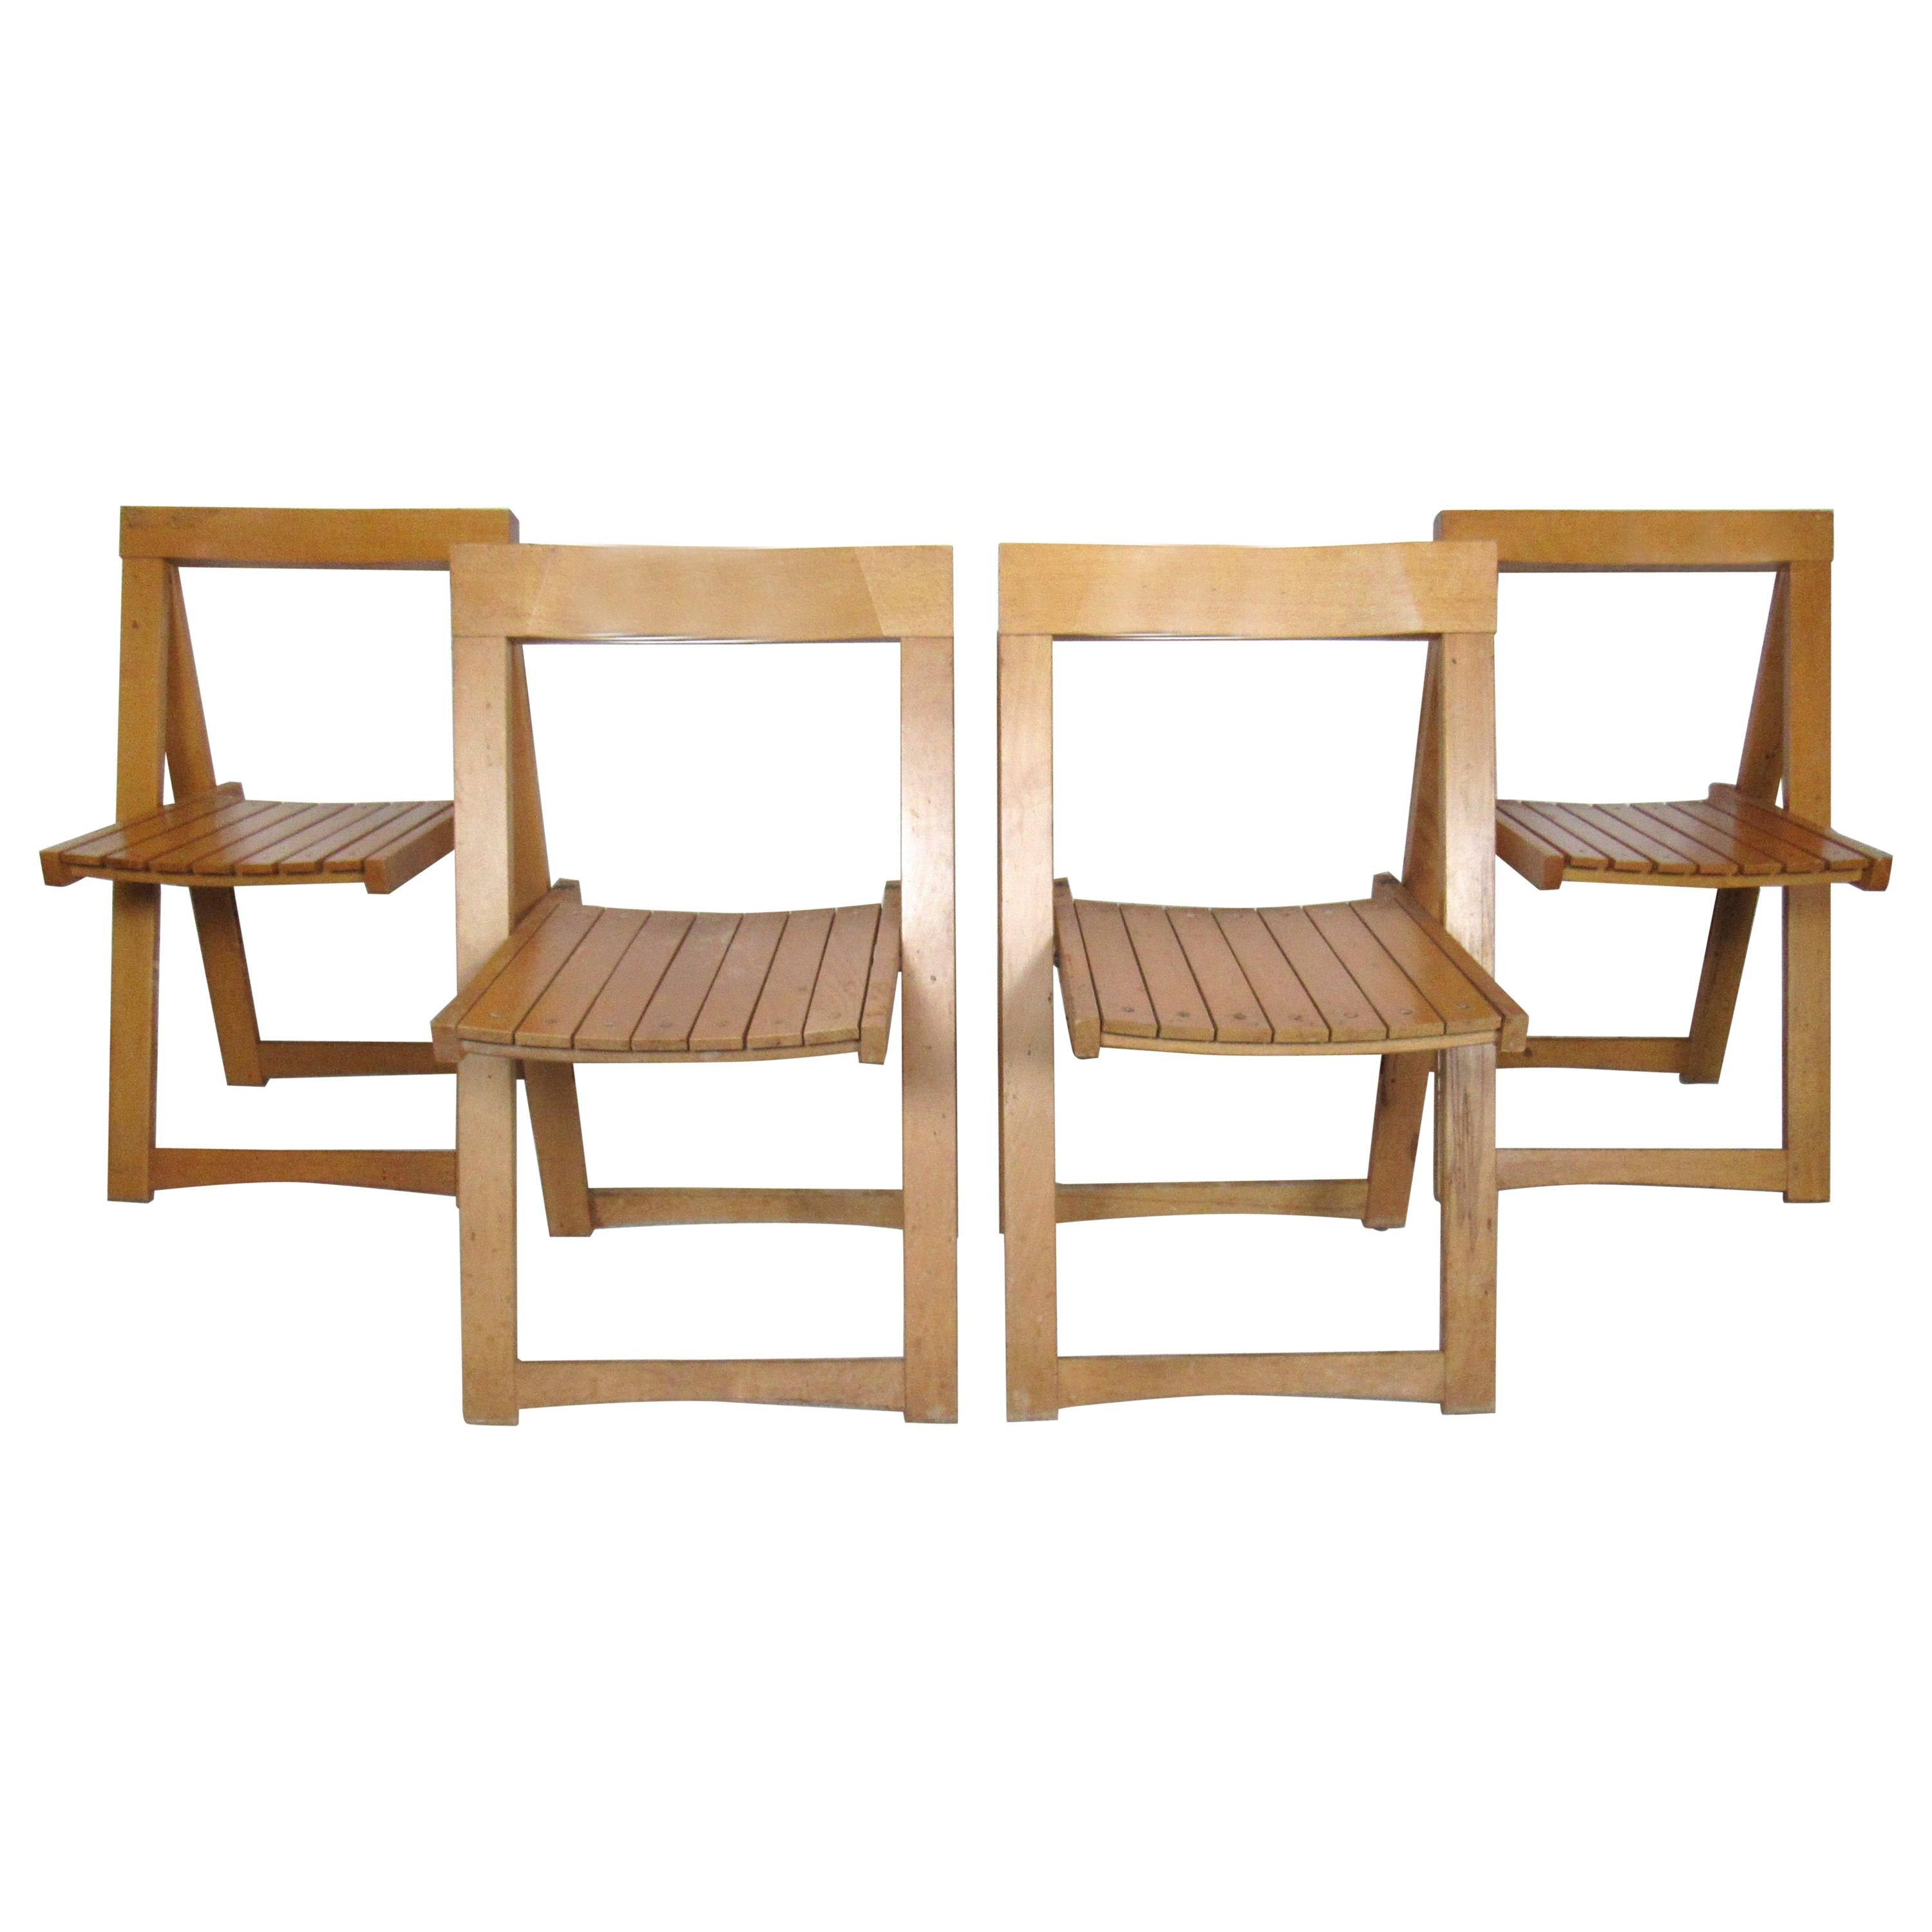 Set of Slat Folding Chairs